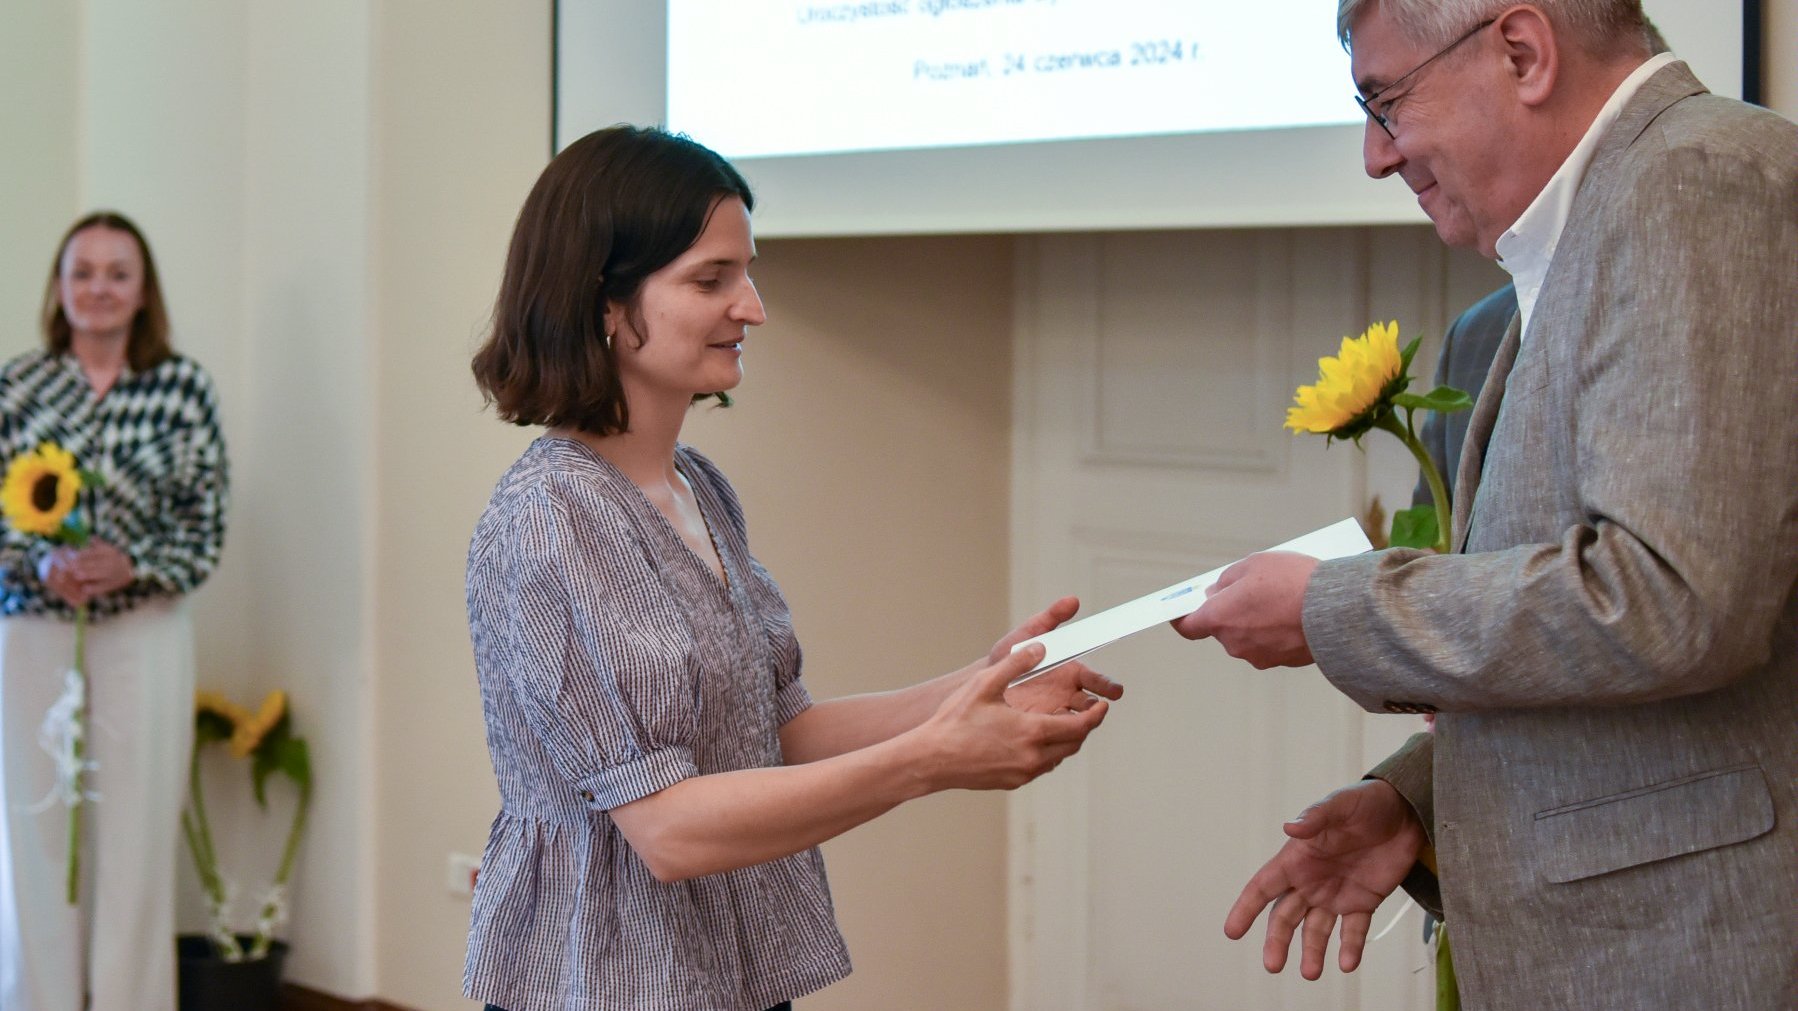 Na zdjęciu młoda kobieta odbierająca dyplom z rąk mężczyzny